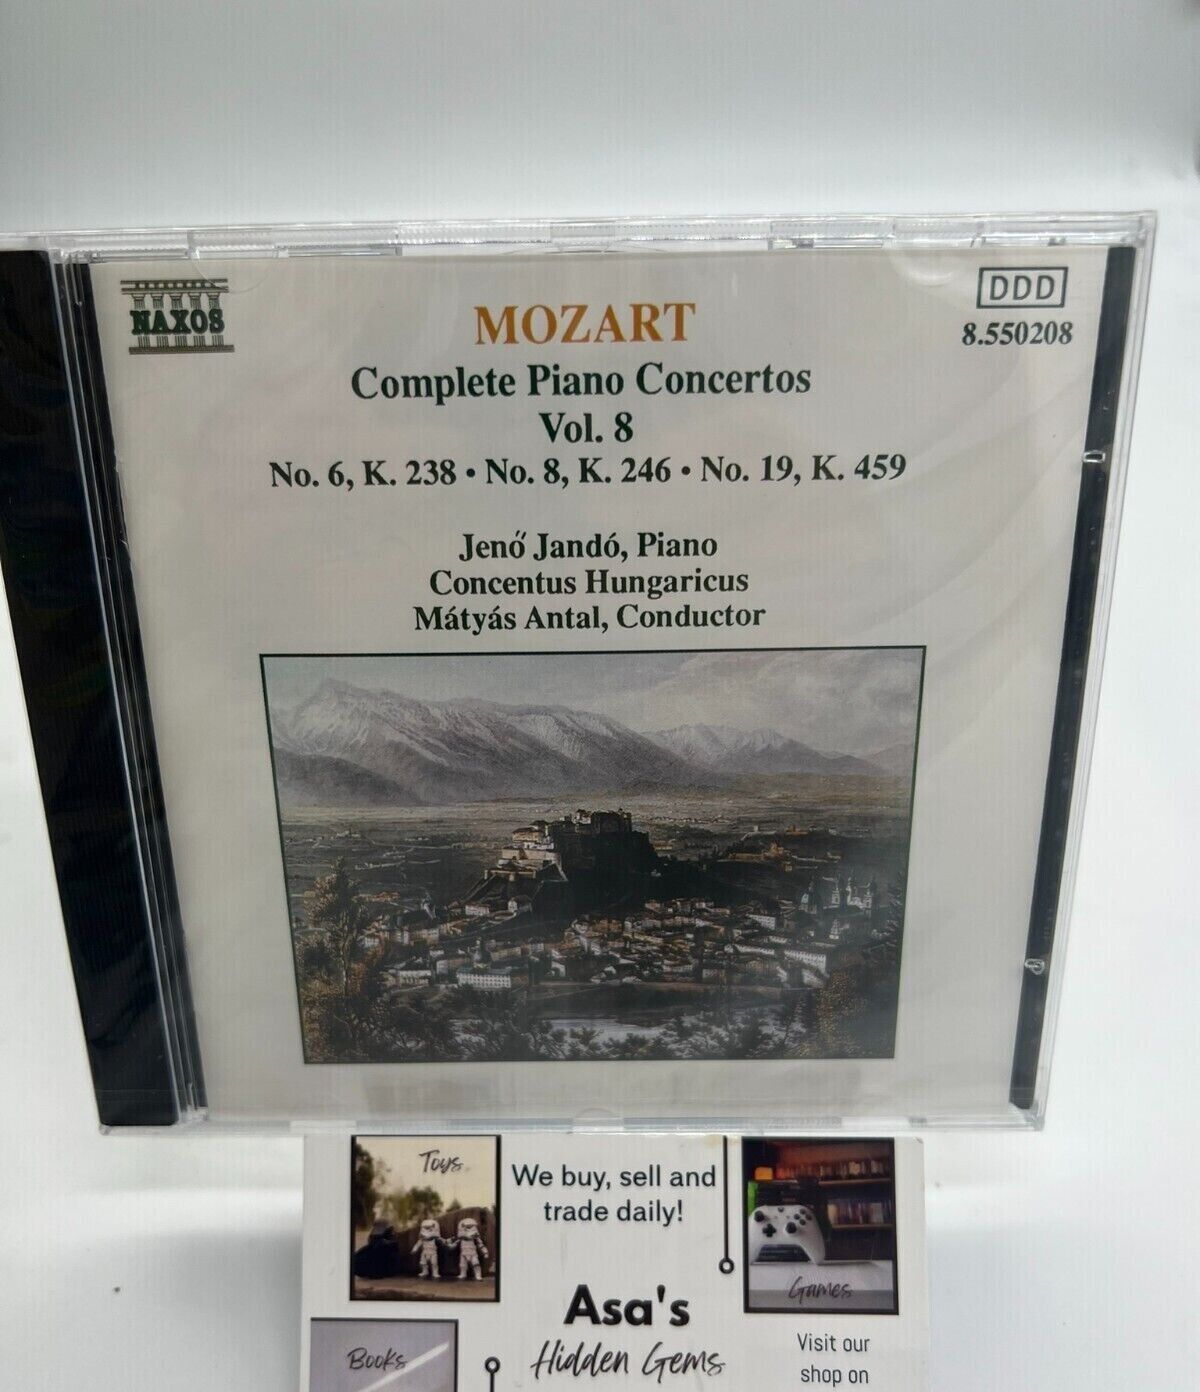 Mozart Complete Piano Concertos vol. 8